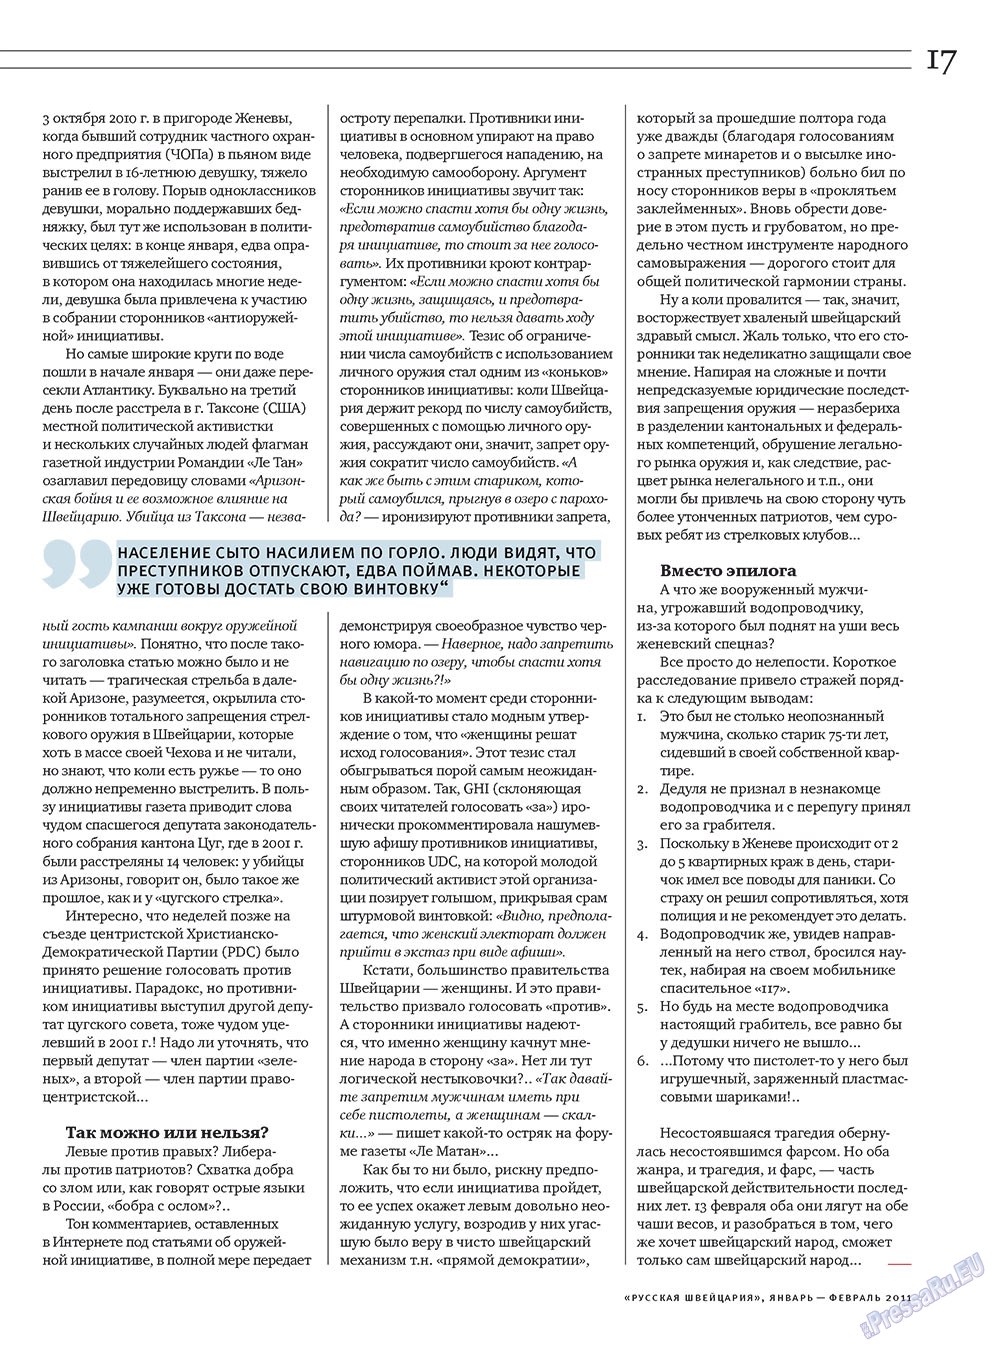 Russkaja Schweizaria (Zeitschrift). 2011 Jahr, Ausgabe 1, Seite 17